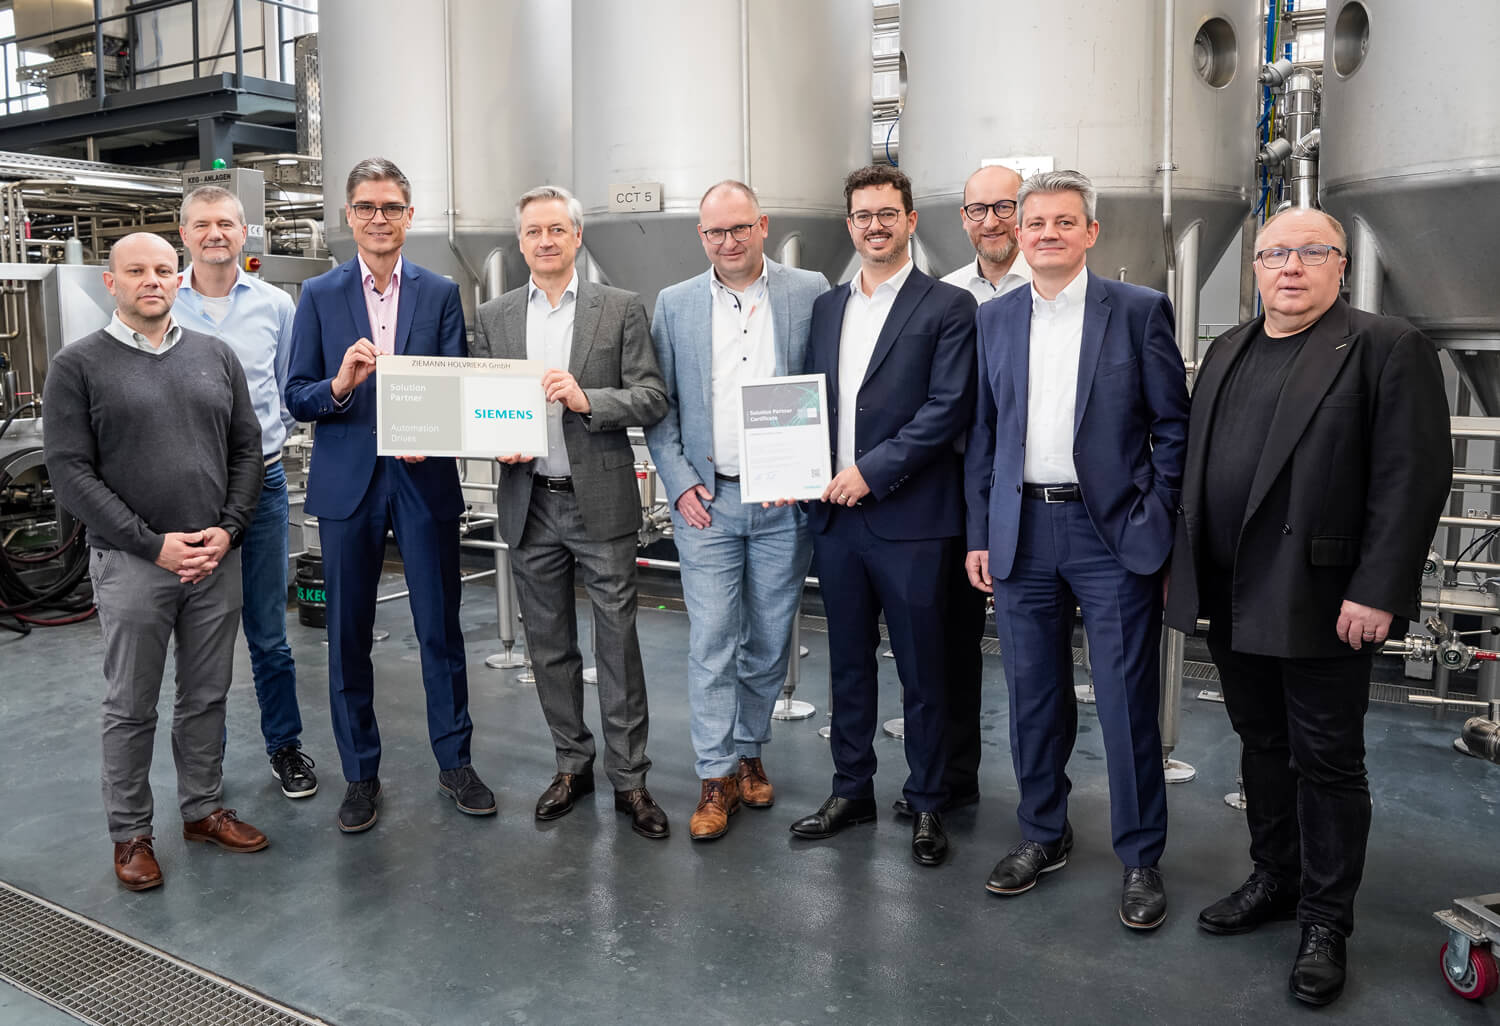 Ziemann Holvrieka ist ein neuer Siemens Solution Partner